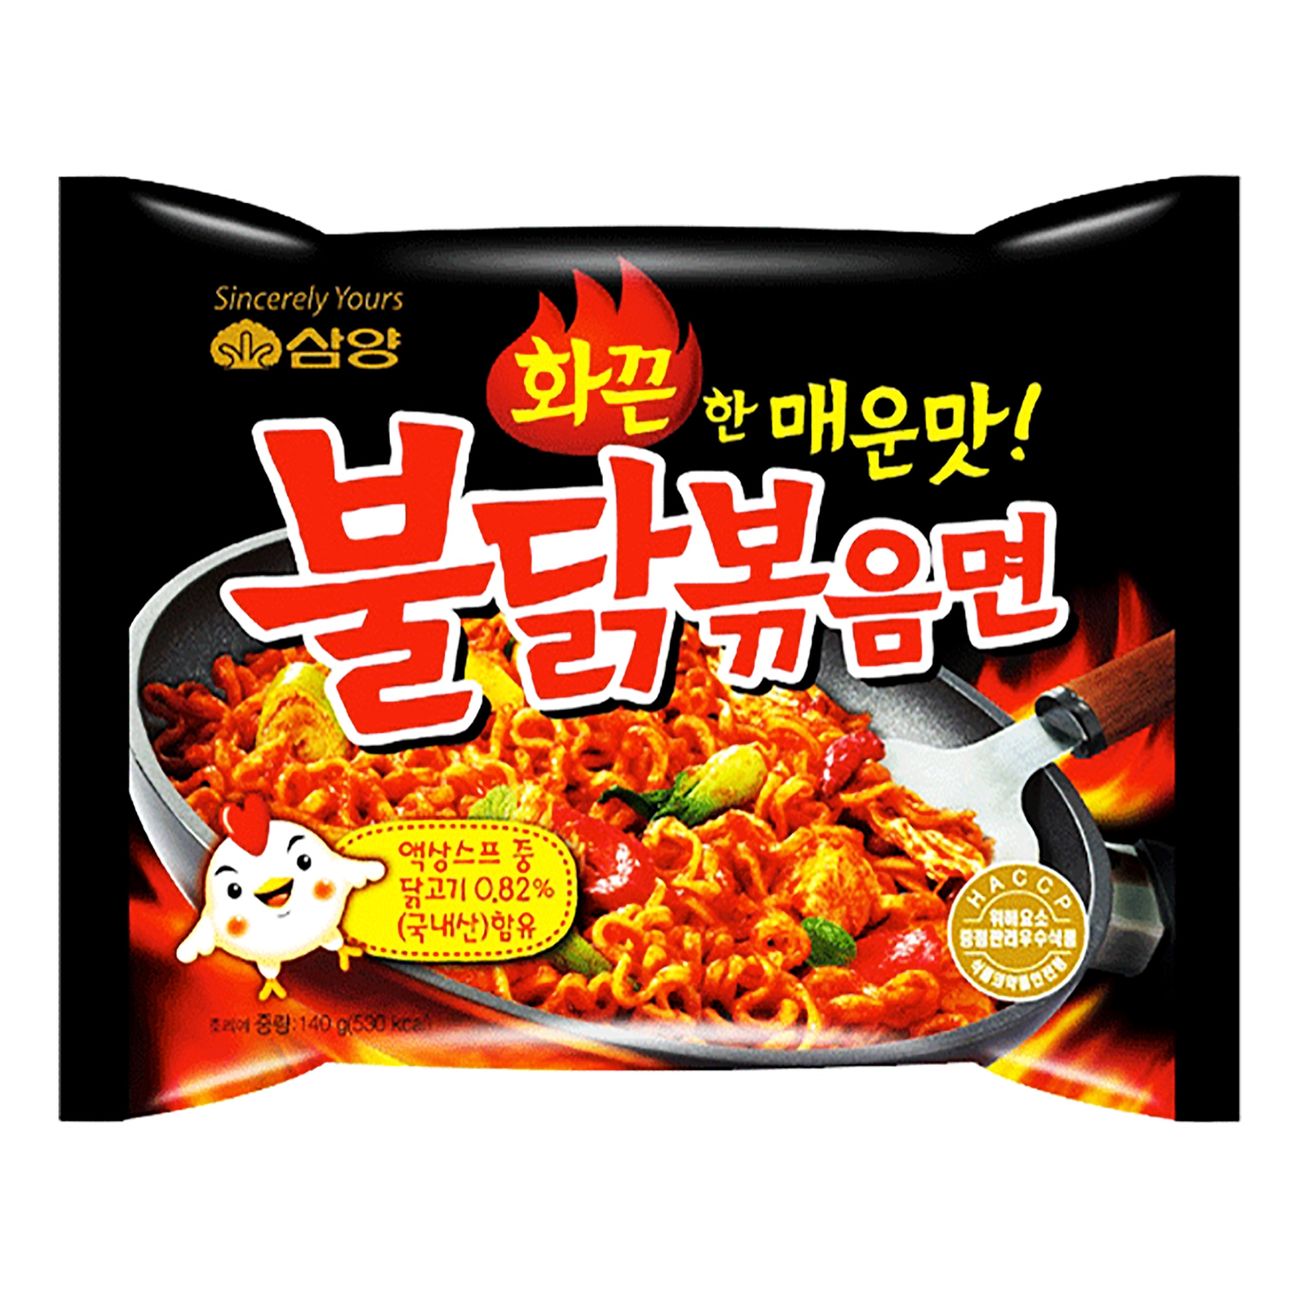 samyang-hot-chicken-ramen-original-89840-1